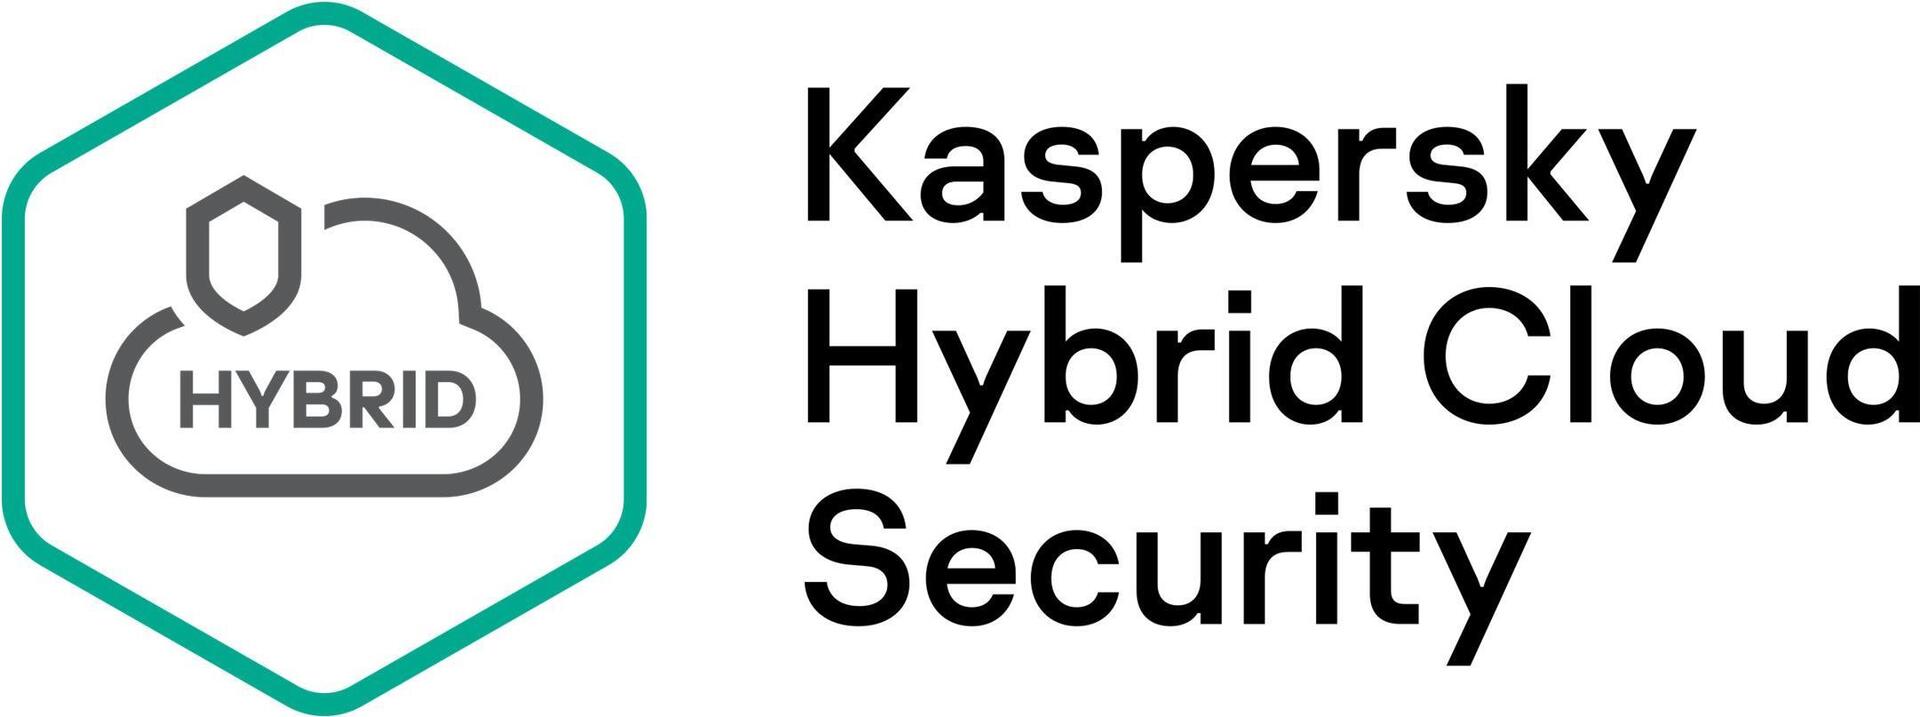 KASPERSKY Hybrid Cloud Security Enterprise CPU European Edition 1 - CPU 1 year Renewal Plus License (KL4553XAAF9)